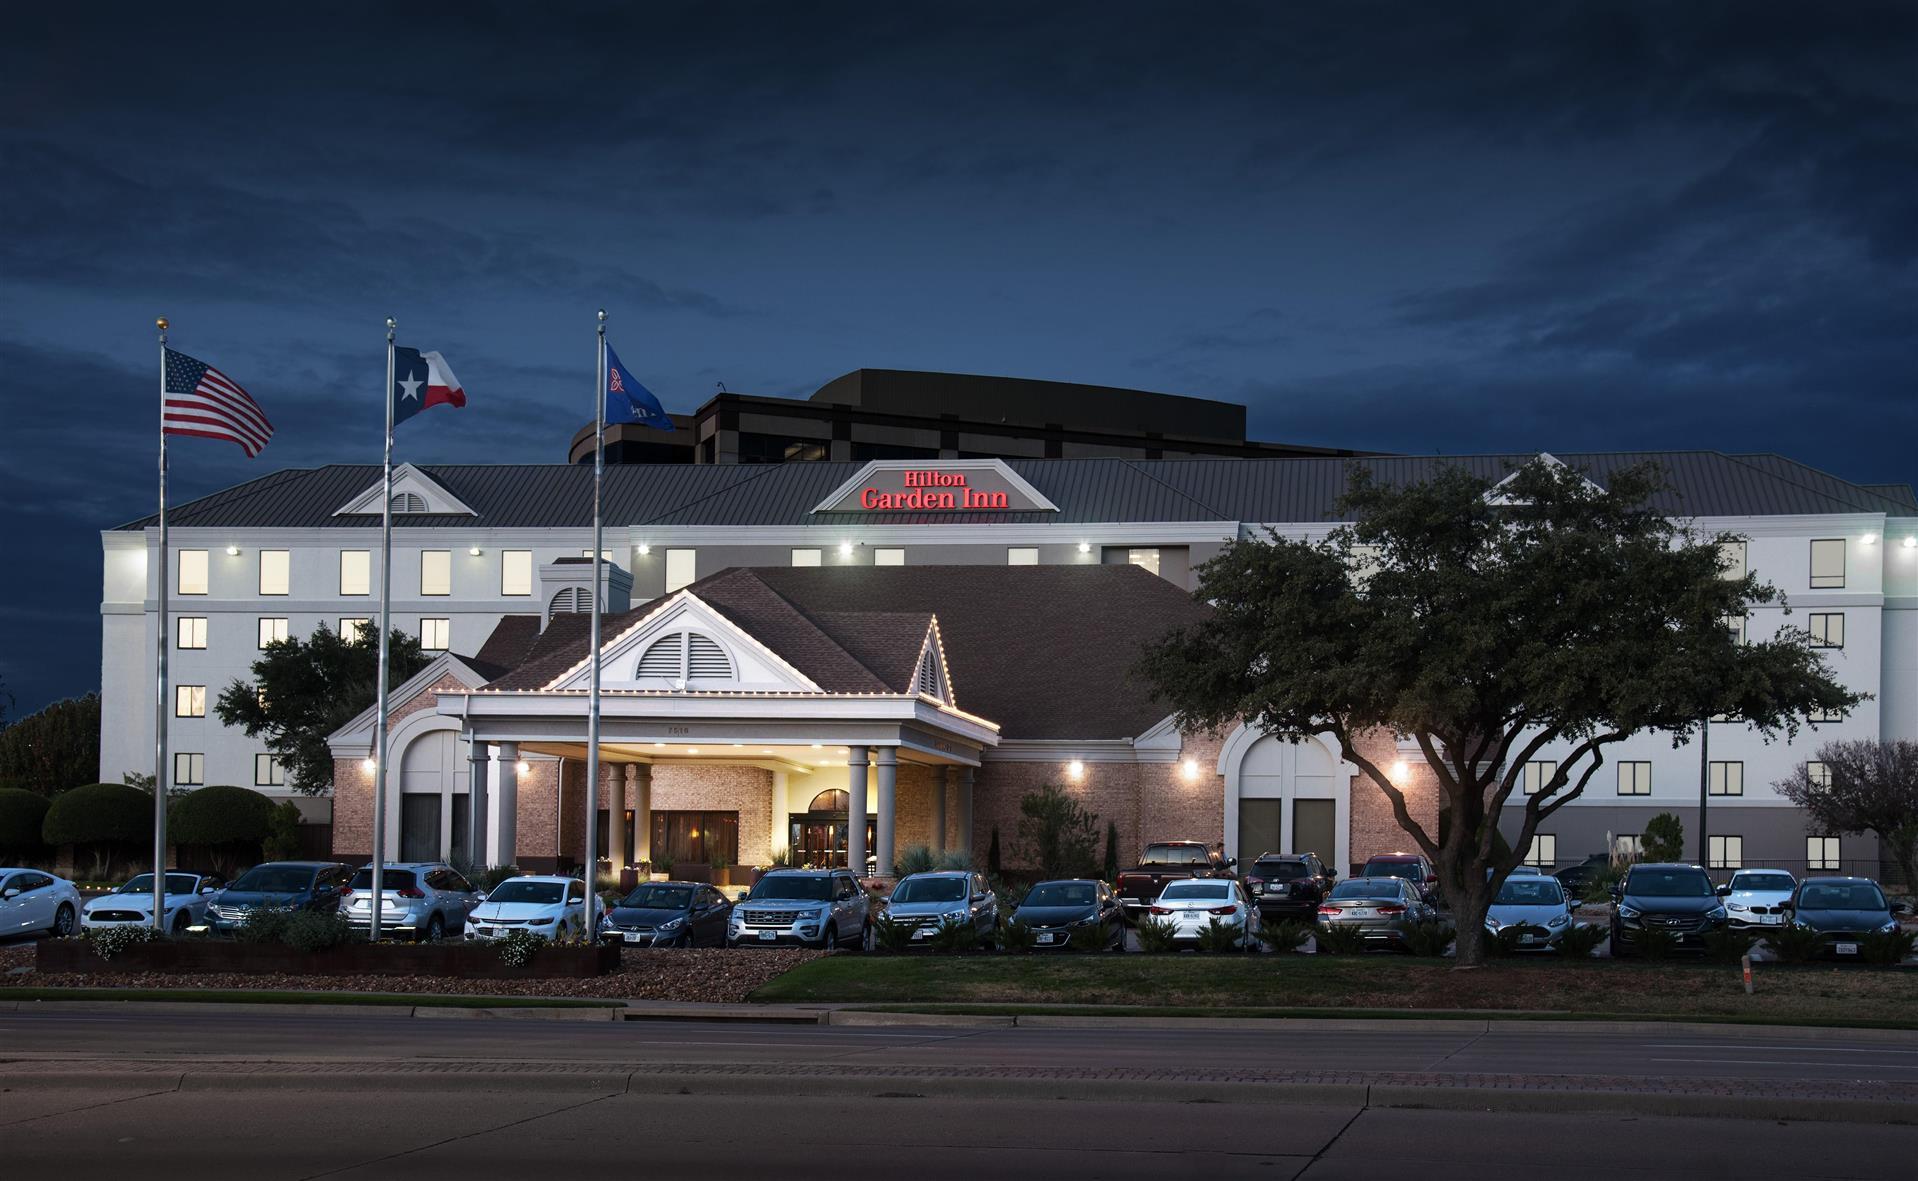 Hilton Garden Inn Las Colinas in Irving, TX